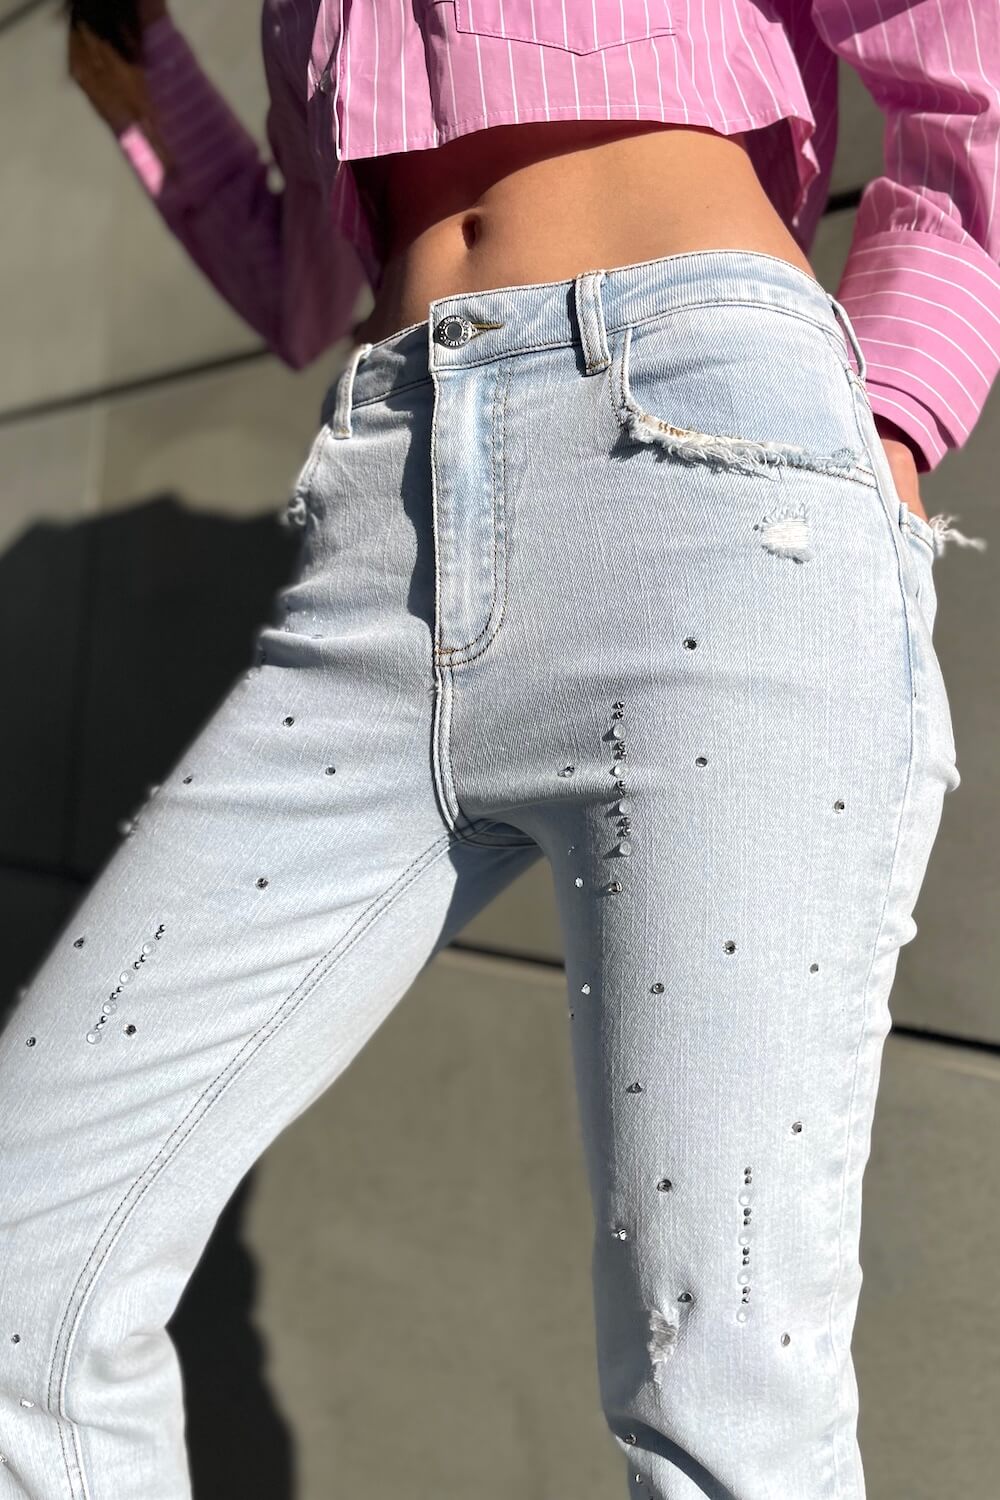 Spodnie Damskie Jeans Mom Fit